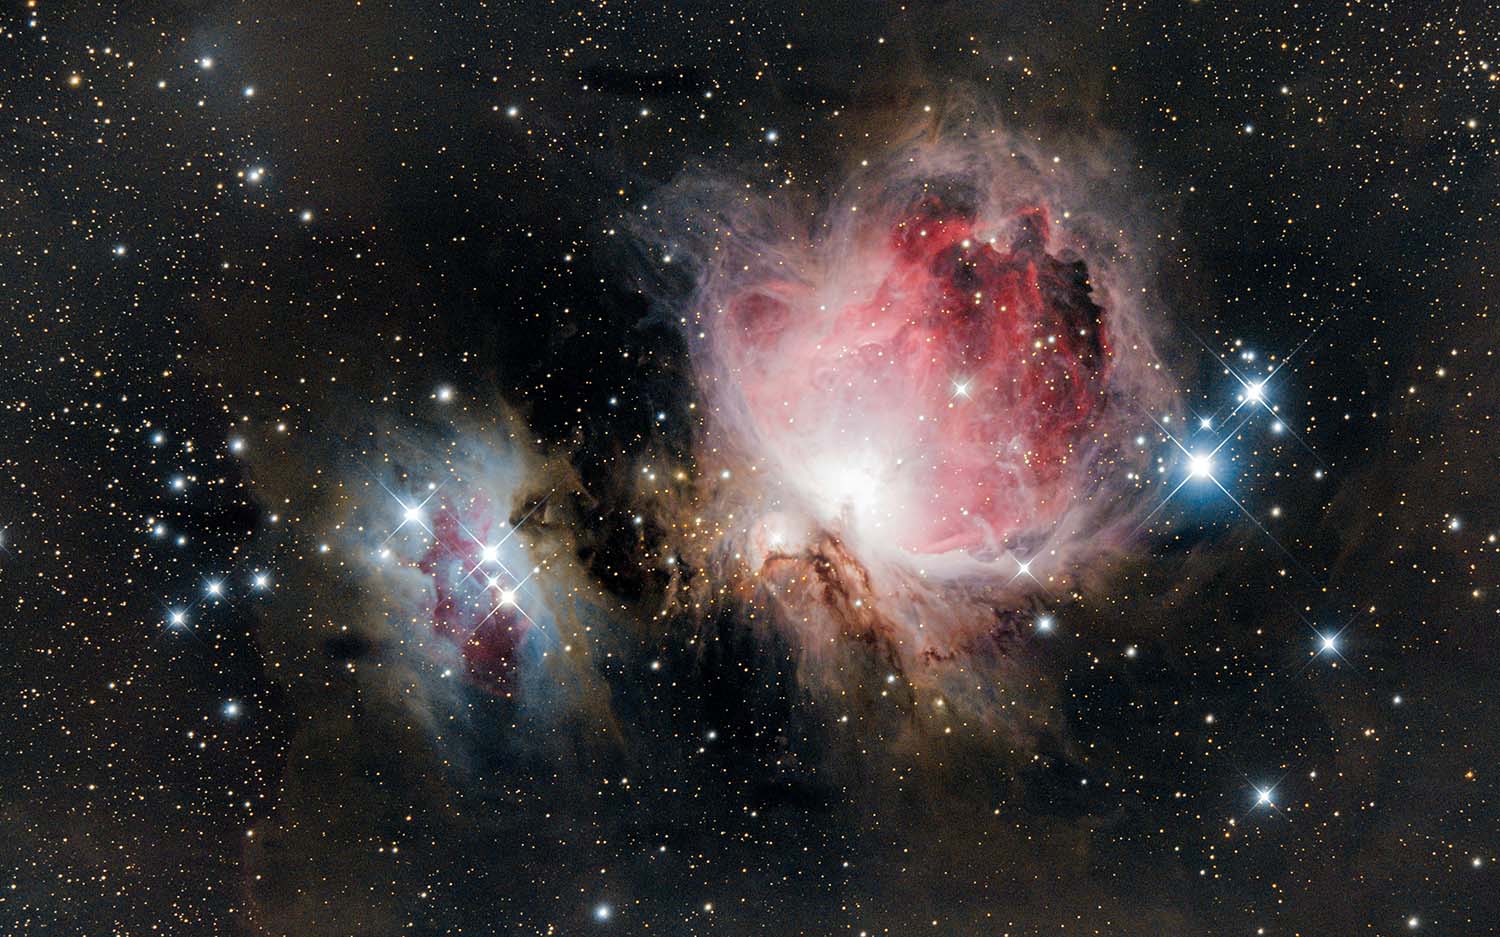 Sternbild Orion am Nachthimmel. Foto von Samuel PASTEUR-FOSSE auf Unsplash.